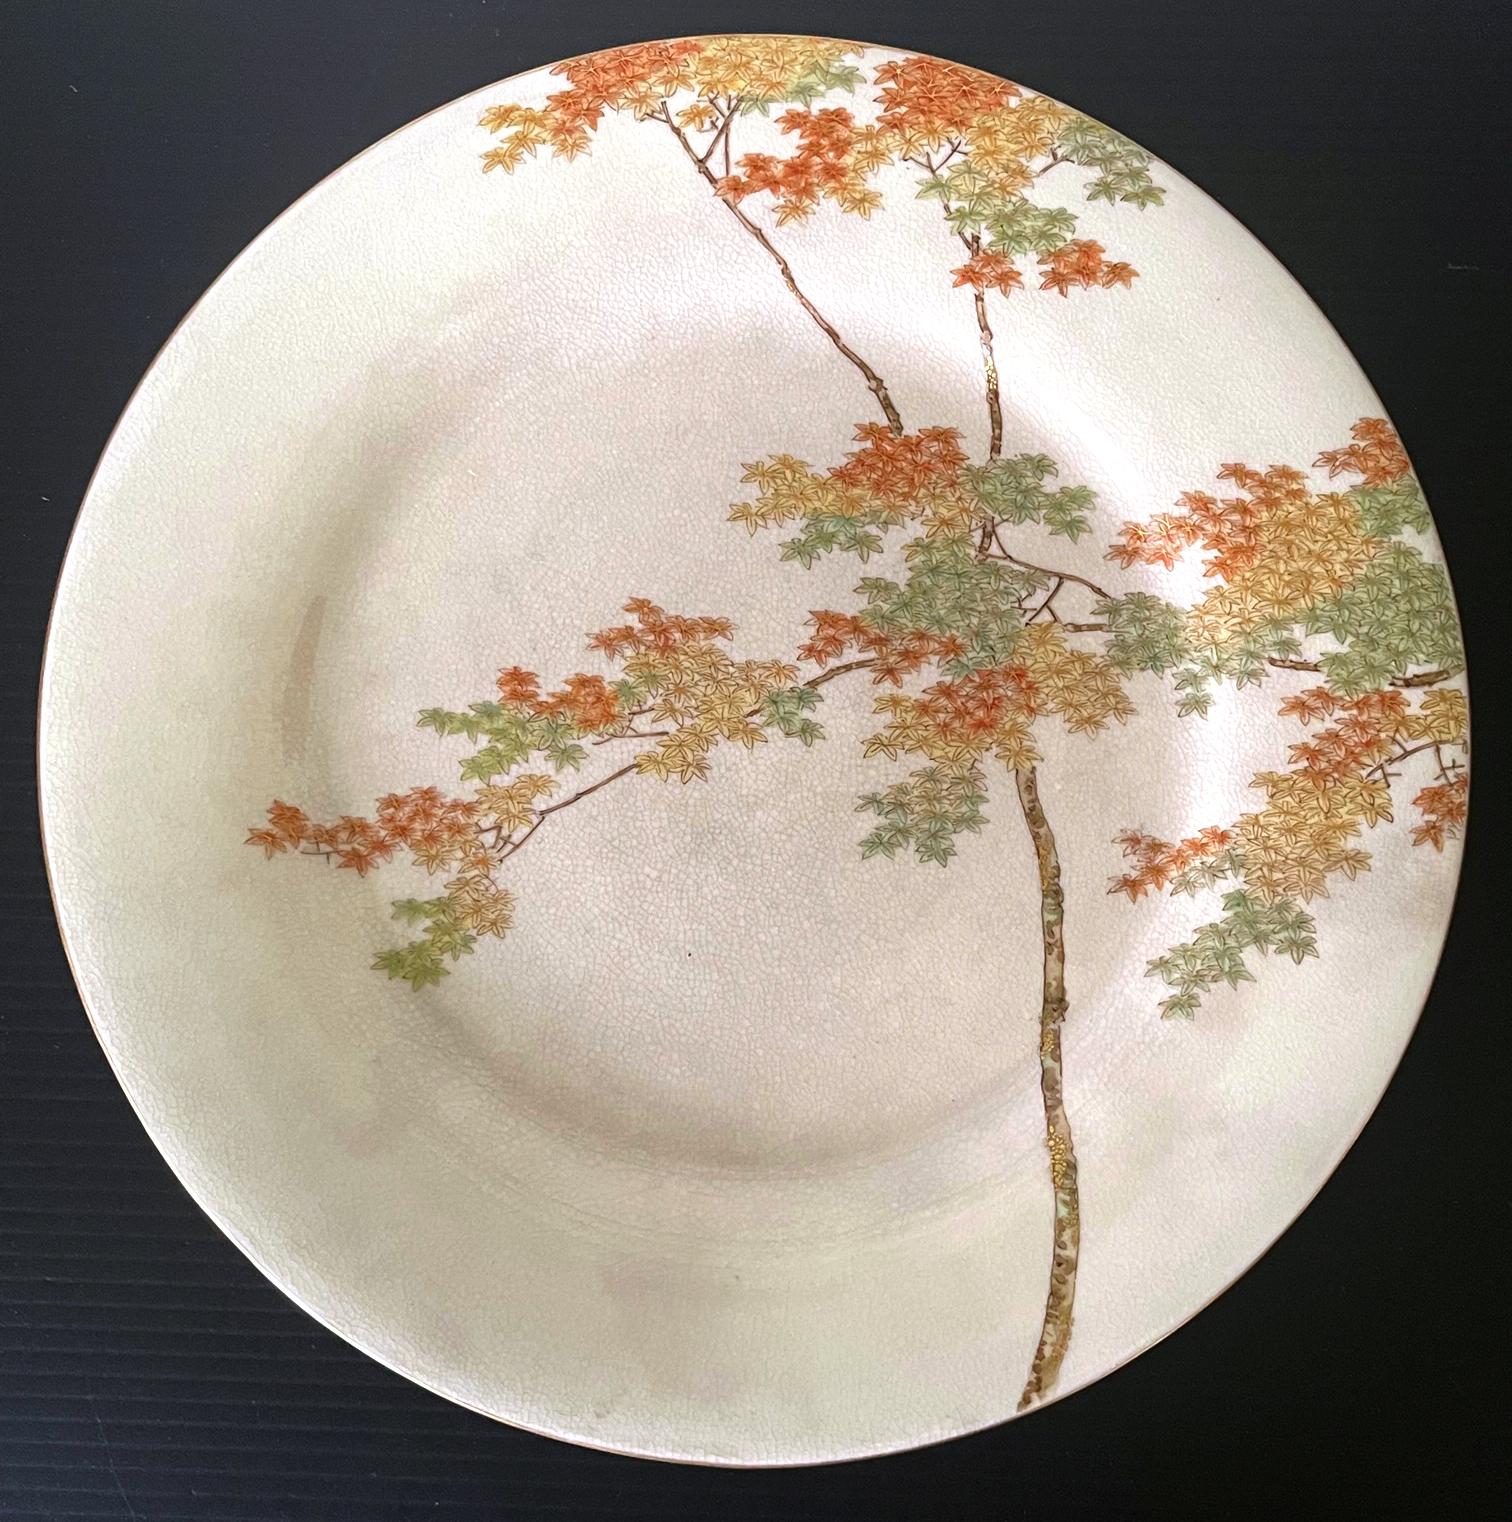 Assiette en céramique japonaise satsuma fabriquée par Kinkozan et vendue par Yamanaka & Co. vers les années 1900-20 (fin de la période Meiji à début de la période Tasho). L'assiette émaillée de couleur crème présente une très belle décoration d'un